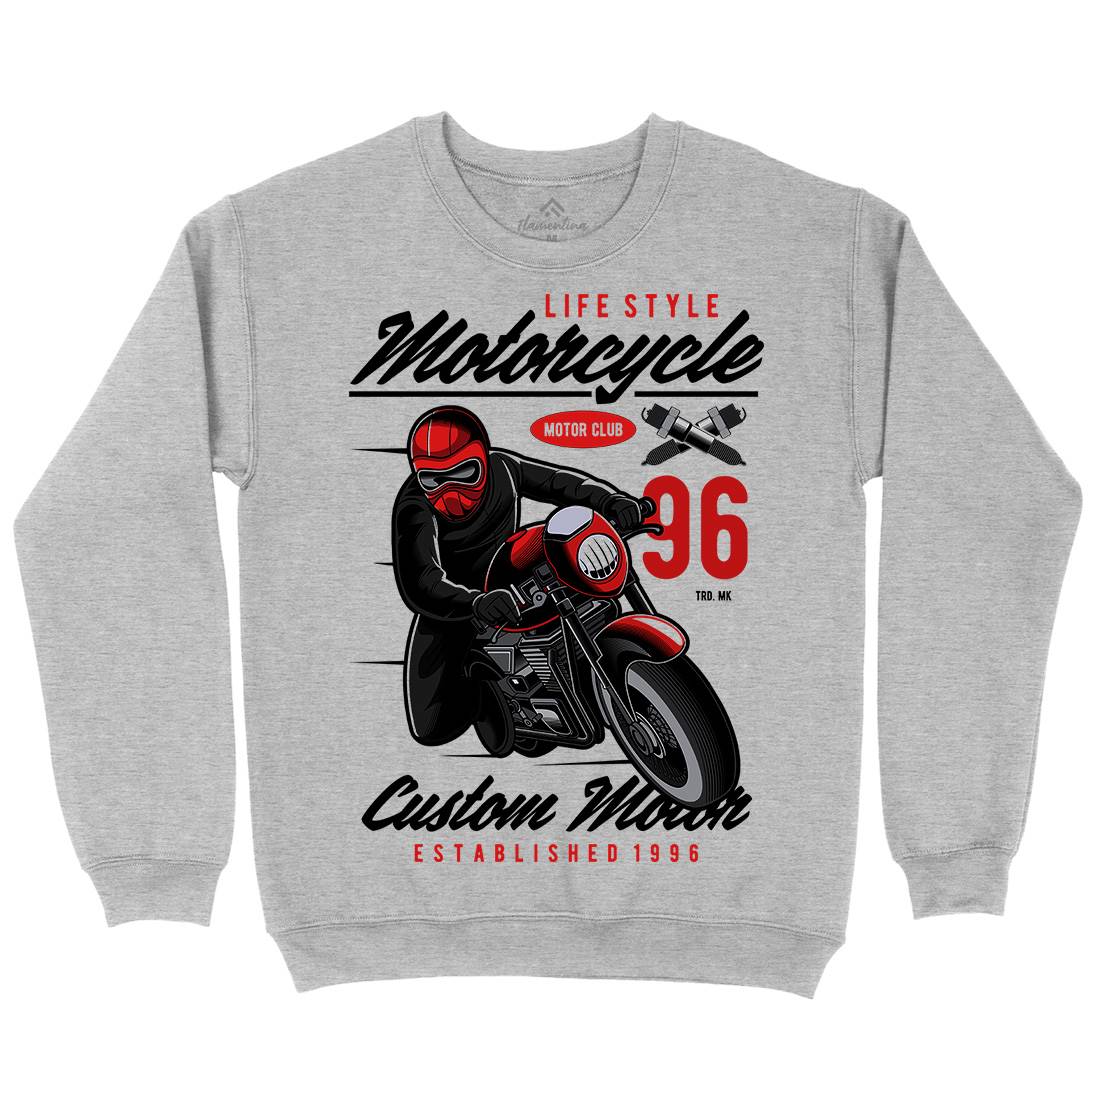 Lifestyle Mens Crew Neck Sweatshirt Motorcycles C399